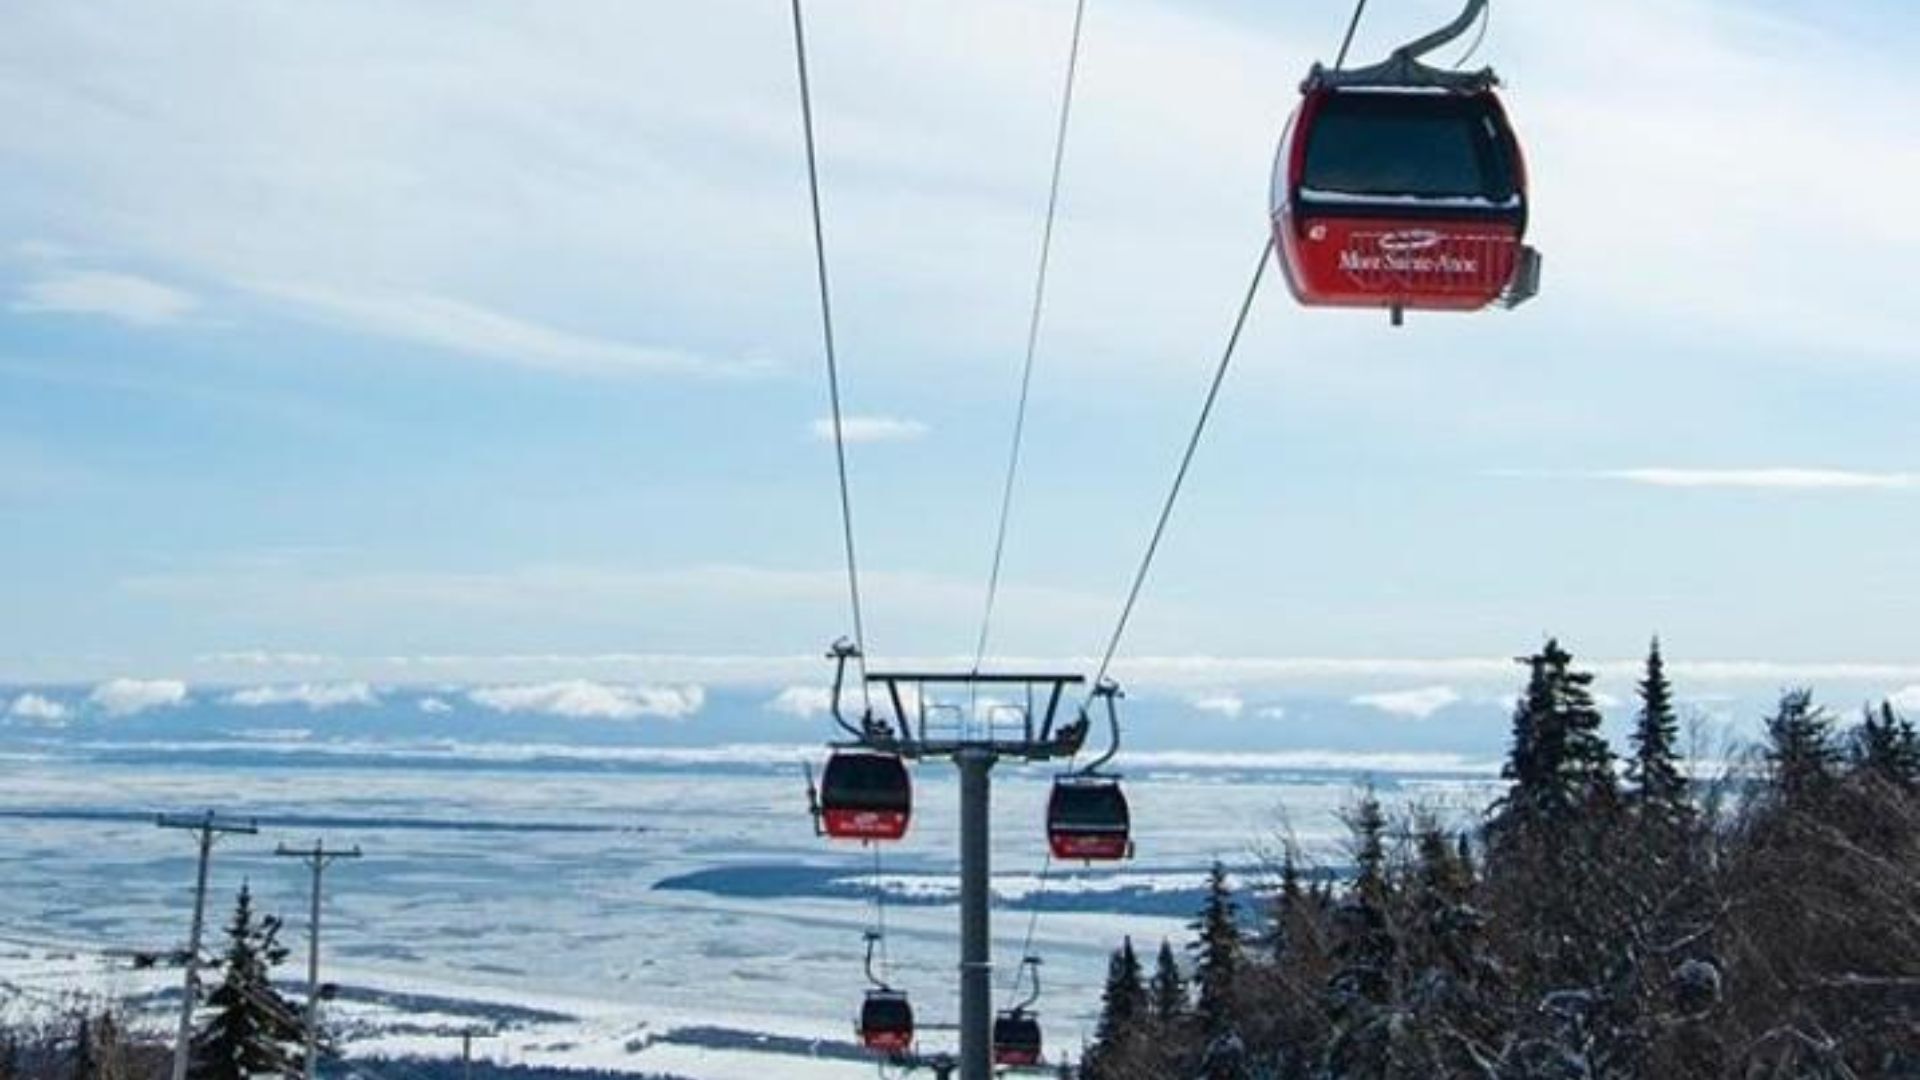 Les skieurs peuvent à nouveau dévaler les pentes du Mont-Sainte-Anne : la station de ski a rouvert ses portes dimanche, après un mois de fermeture.